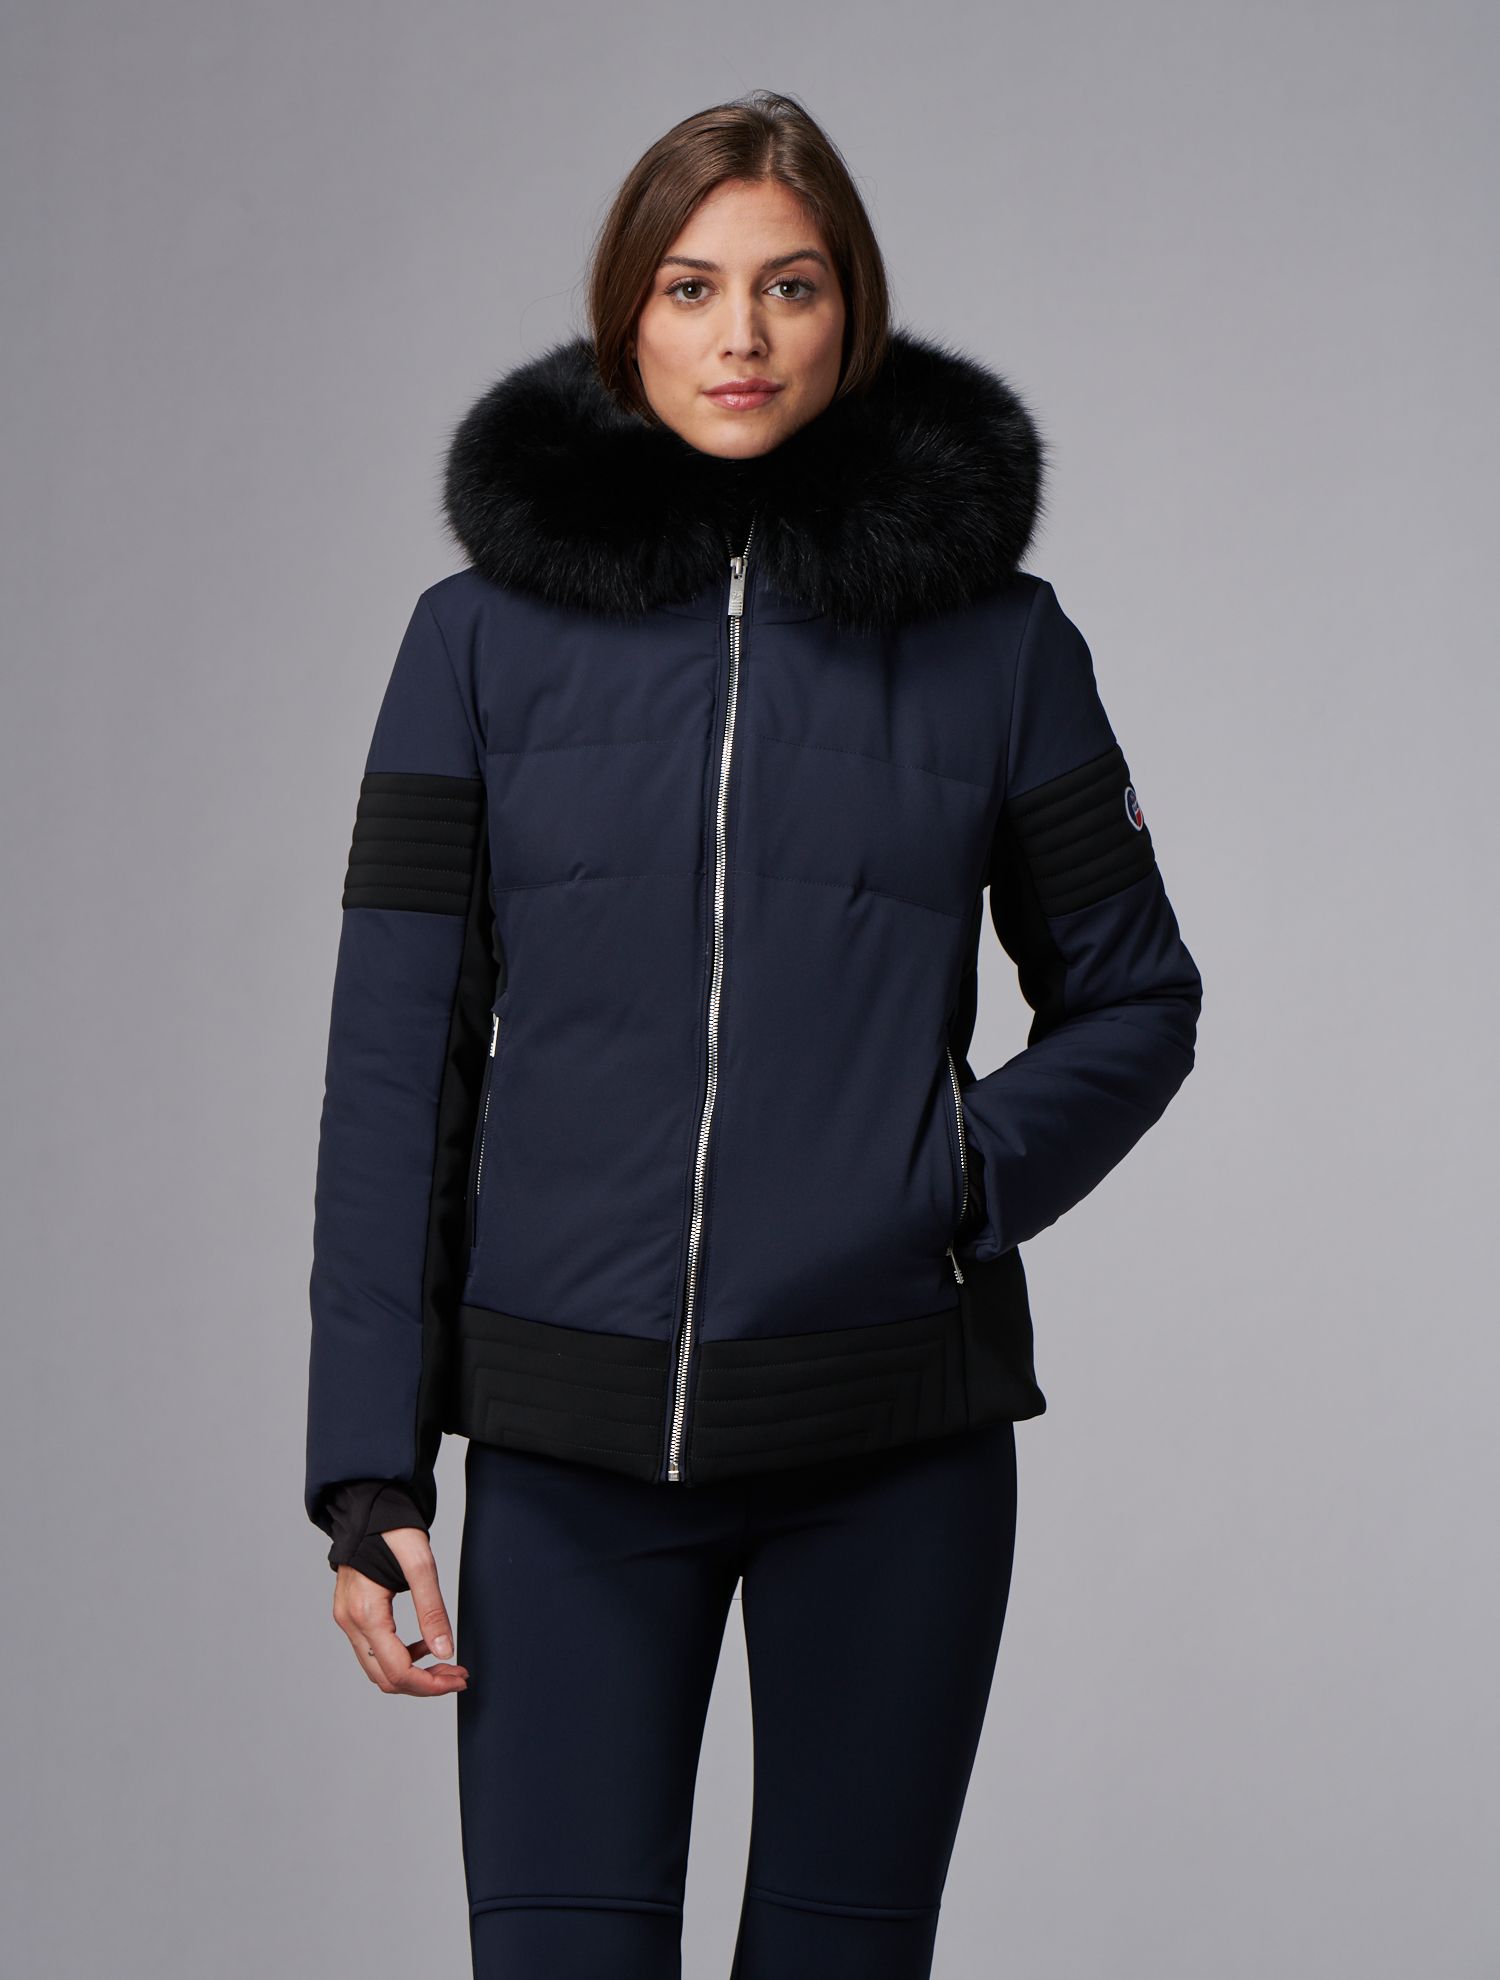 Gardena III jacket: Fusalp iconic ski jacket for women